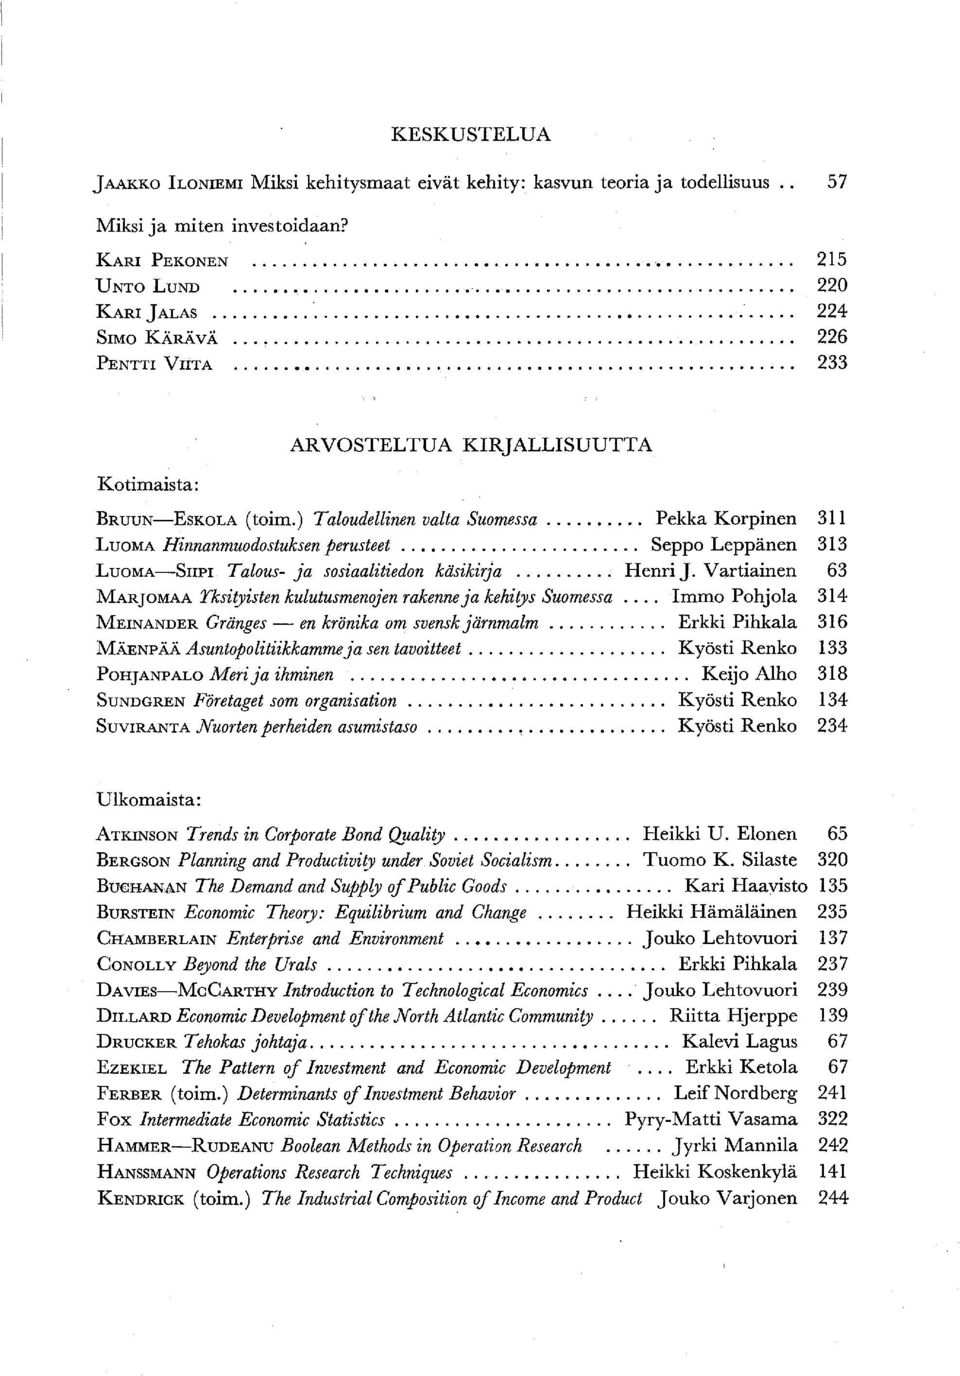 .... Seppo Leppänen 313 LUOMA-SIIPI Talous- ja sosiaalitiedon käsikirja... Henri J. Vartiainen 63 MARJOMAA Yksityisten kulutusmenojen rakenne ja kehitys Suomessa.